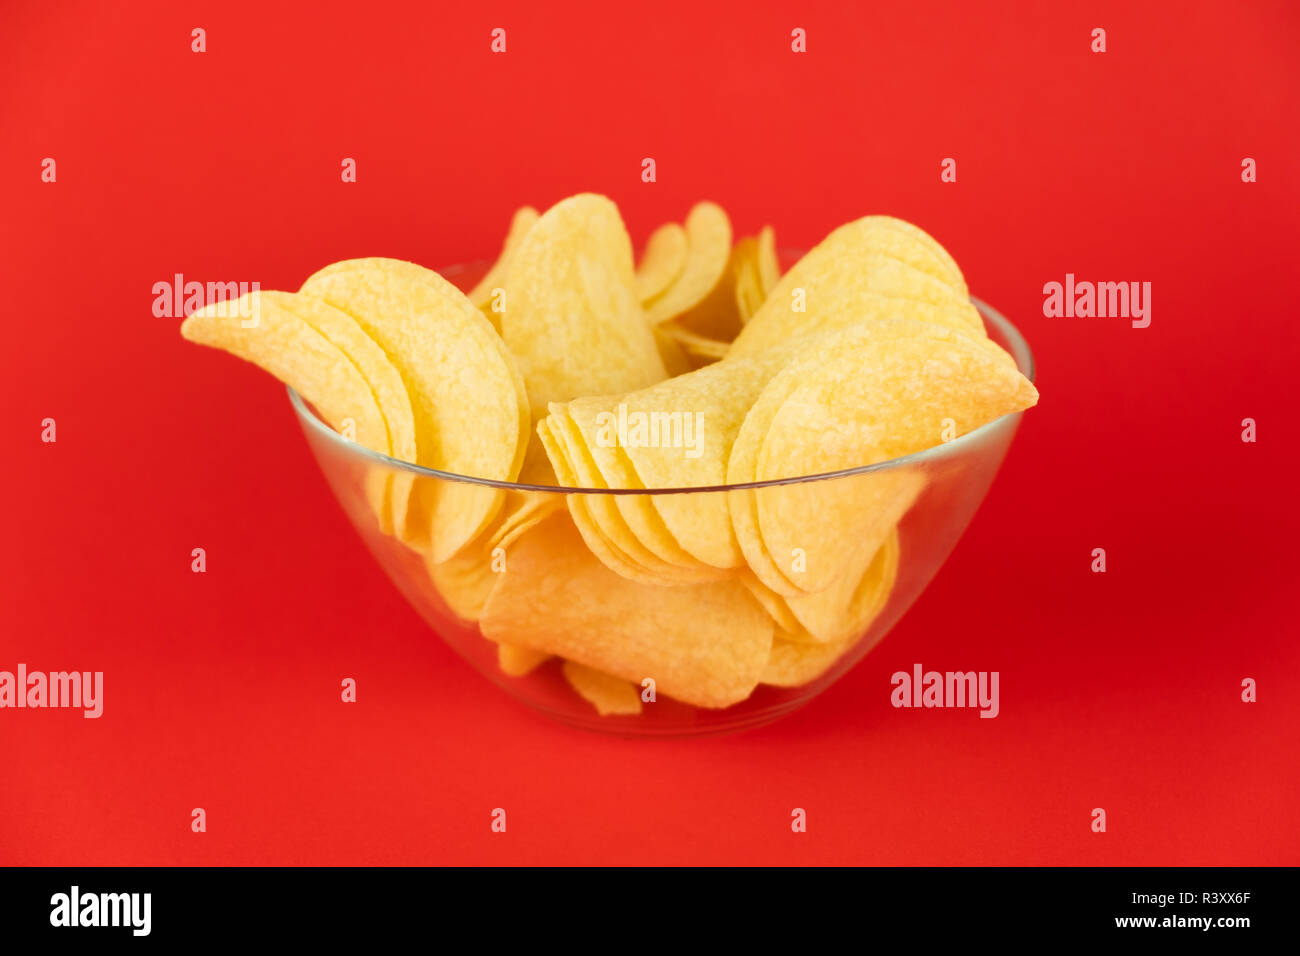 Schüssel Chips in hellen roten Hintergrund. Minimalistischer Bild von Aufmerksamkeitsstarke fast food in lebendigen Farben Stockfoto